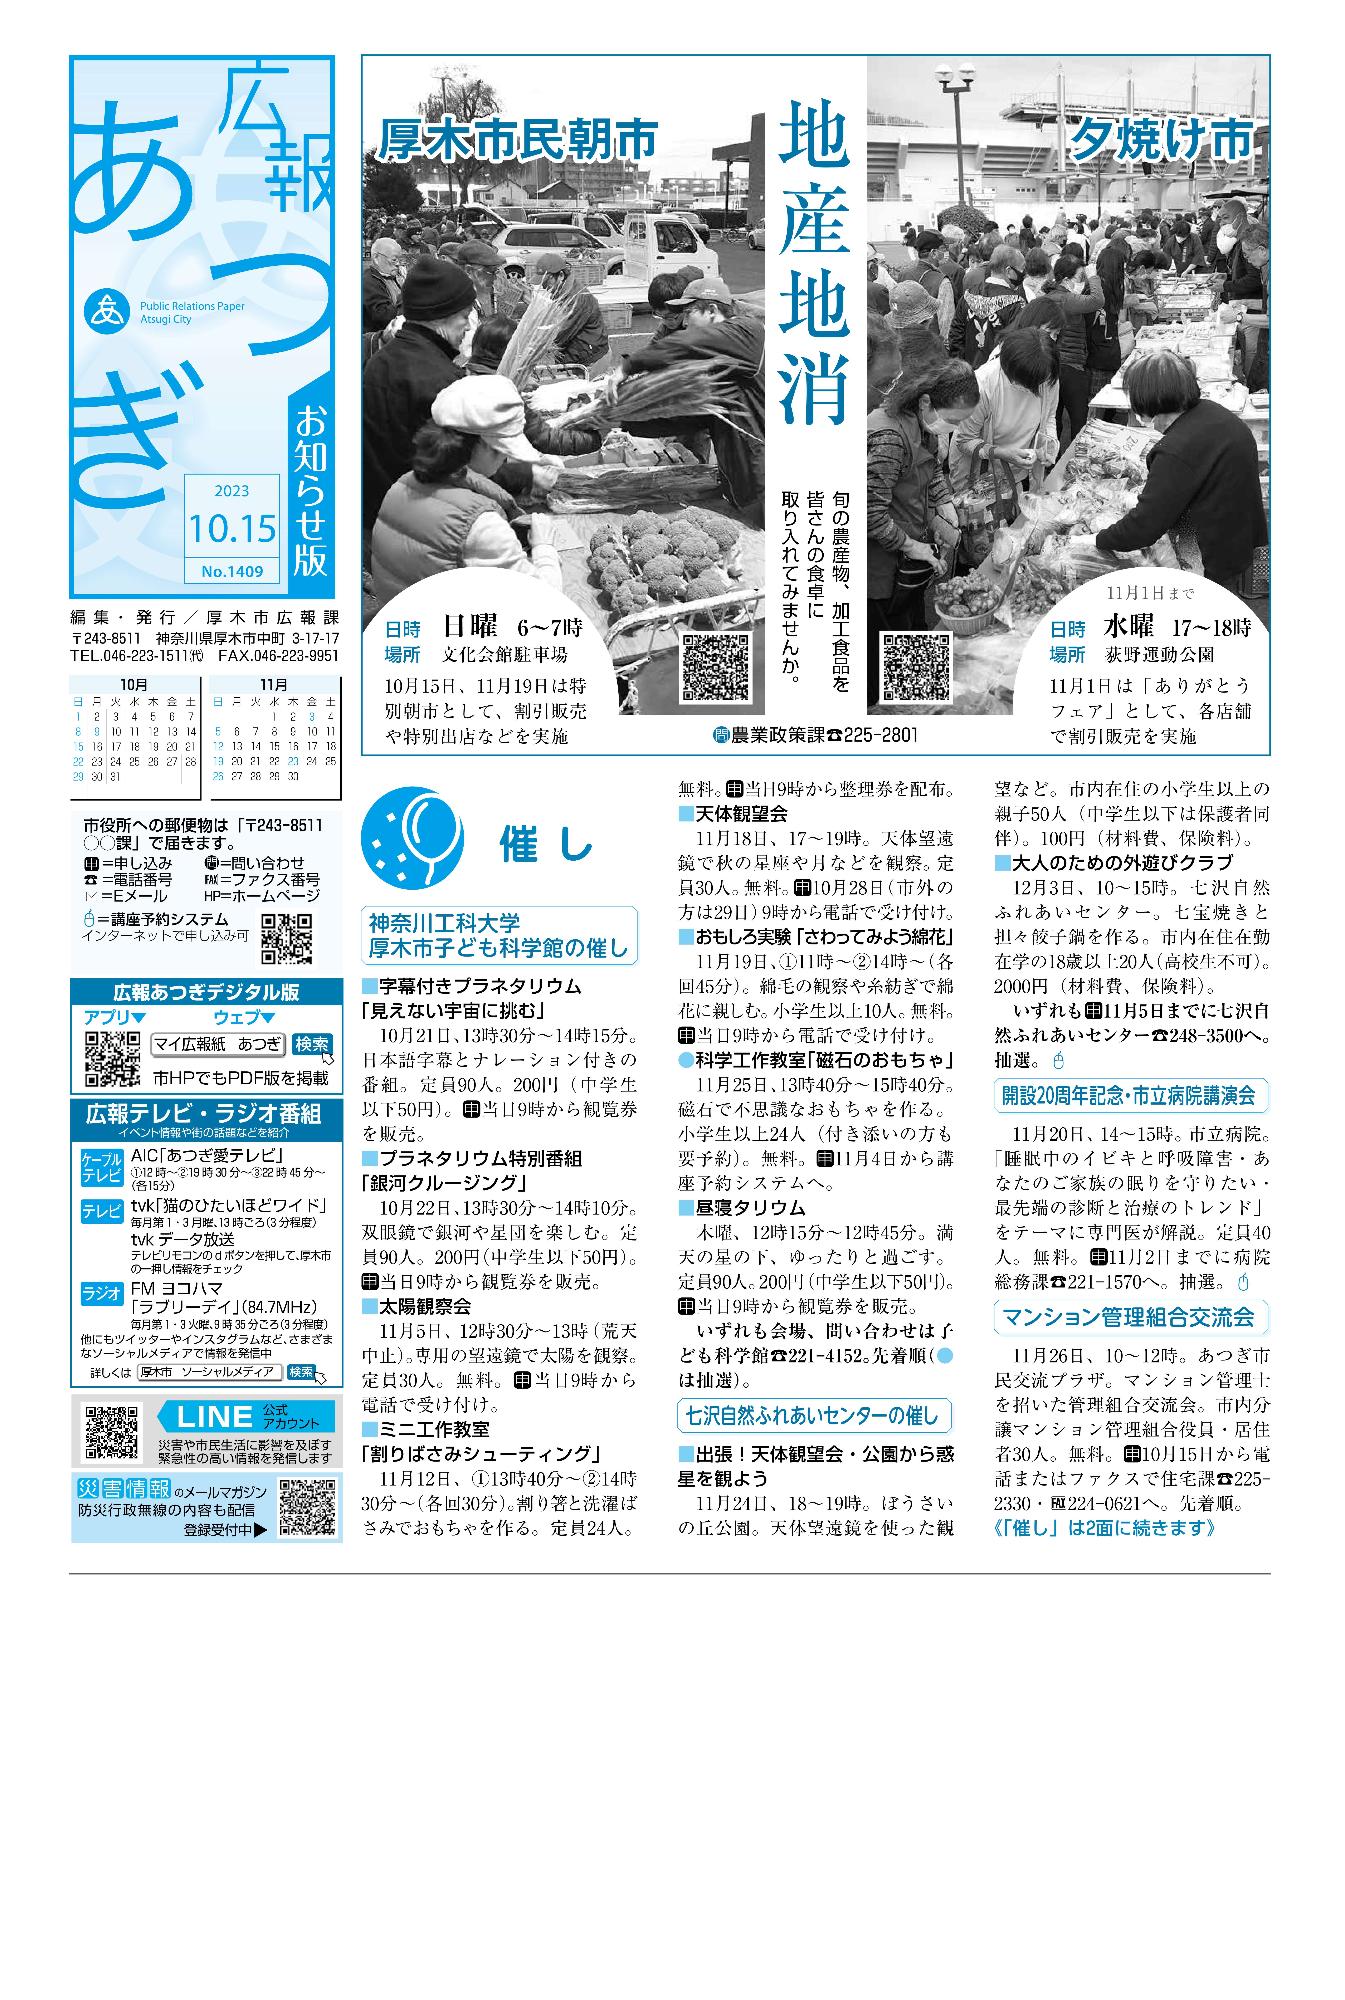 広報あつぎ10月15日号の1面のイメージ画像